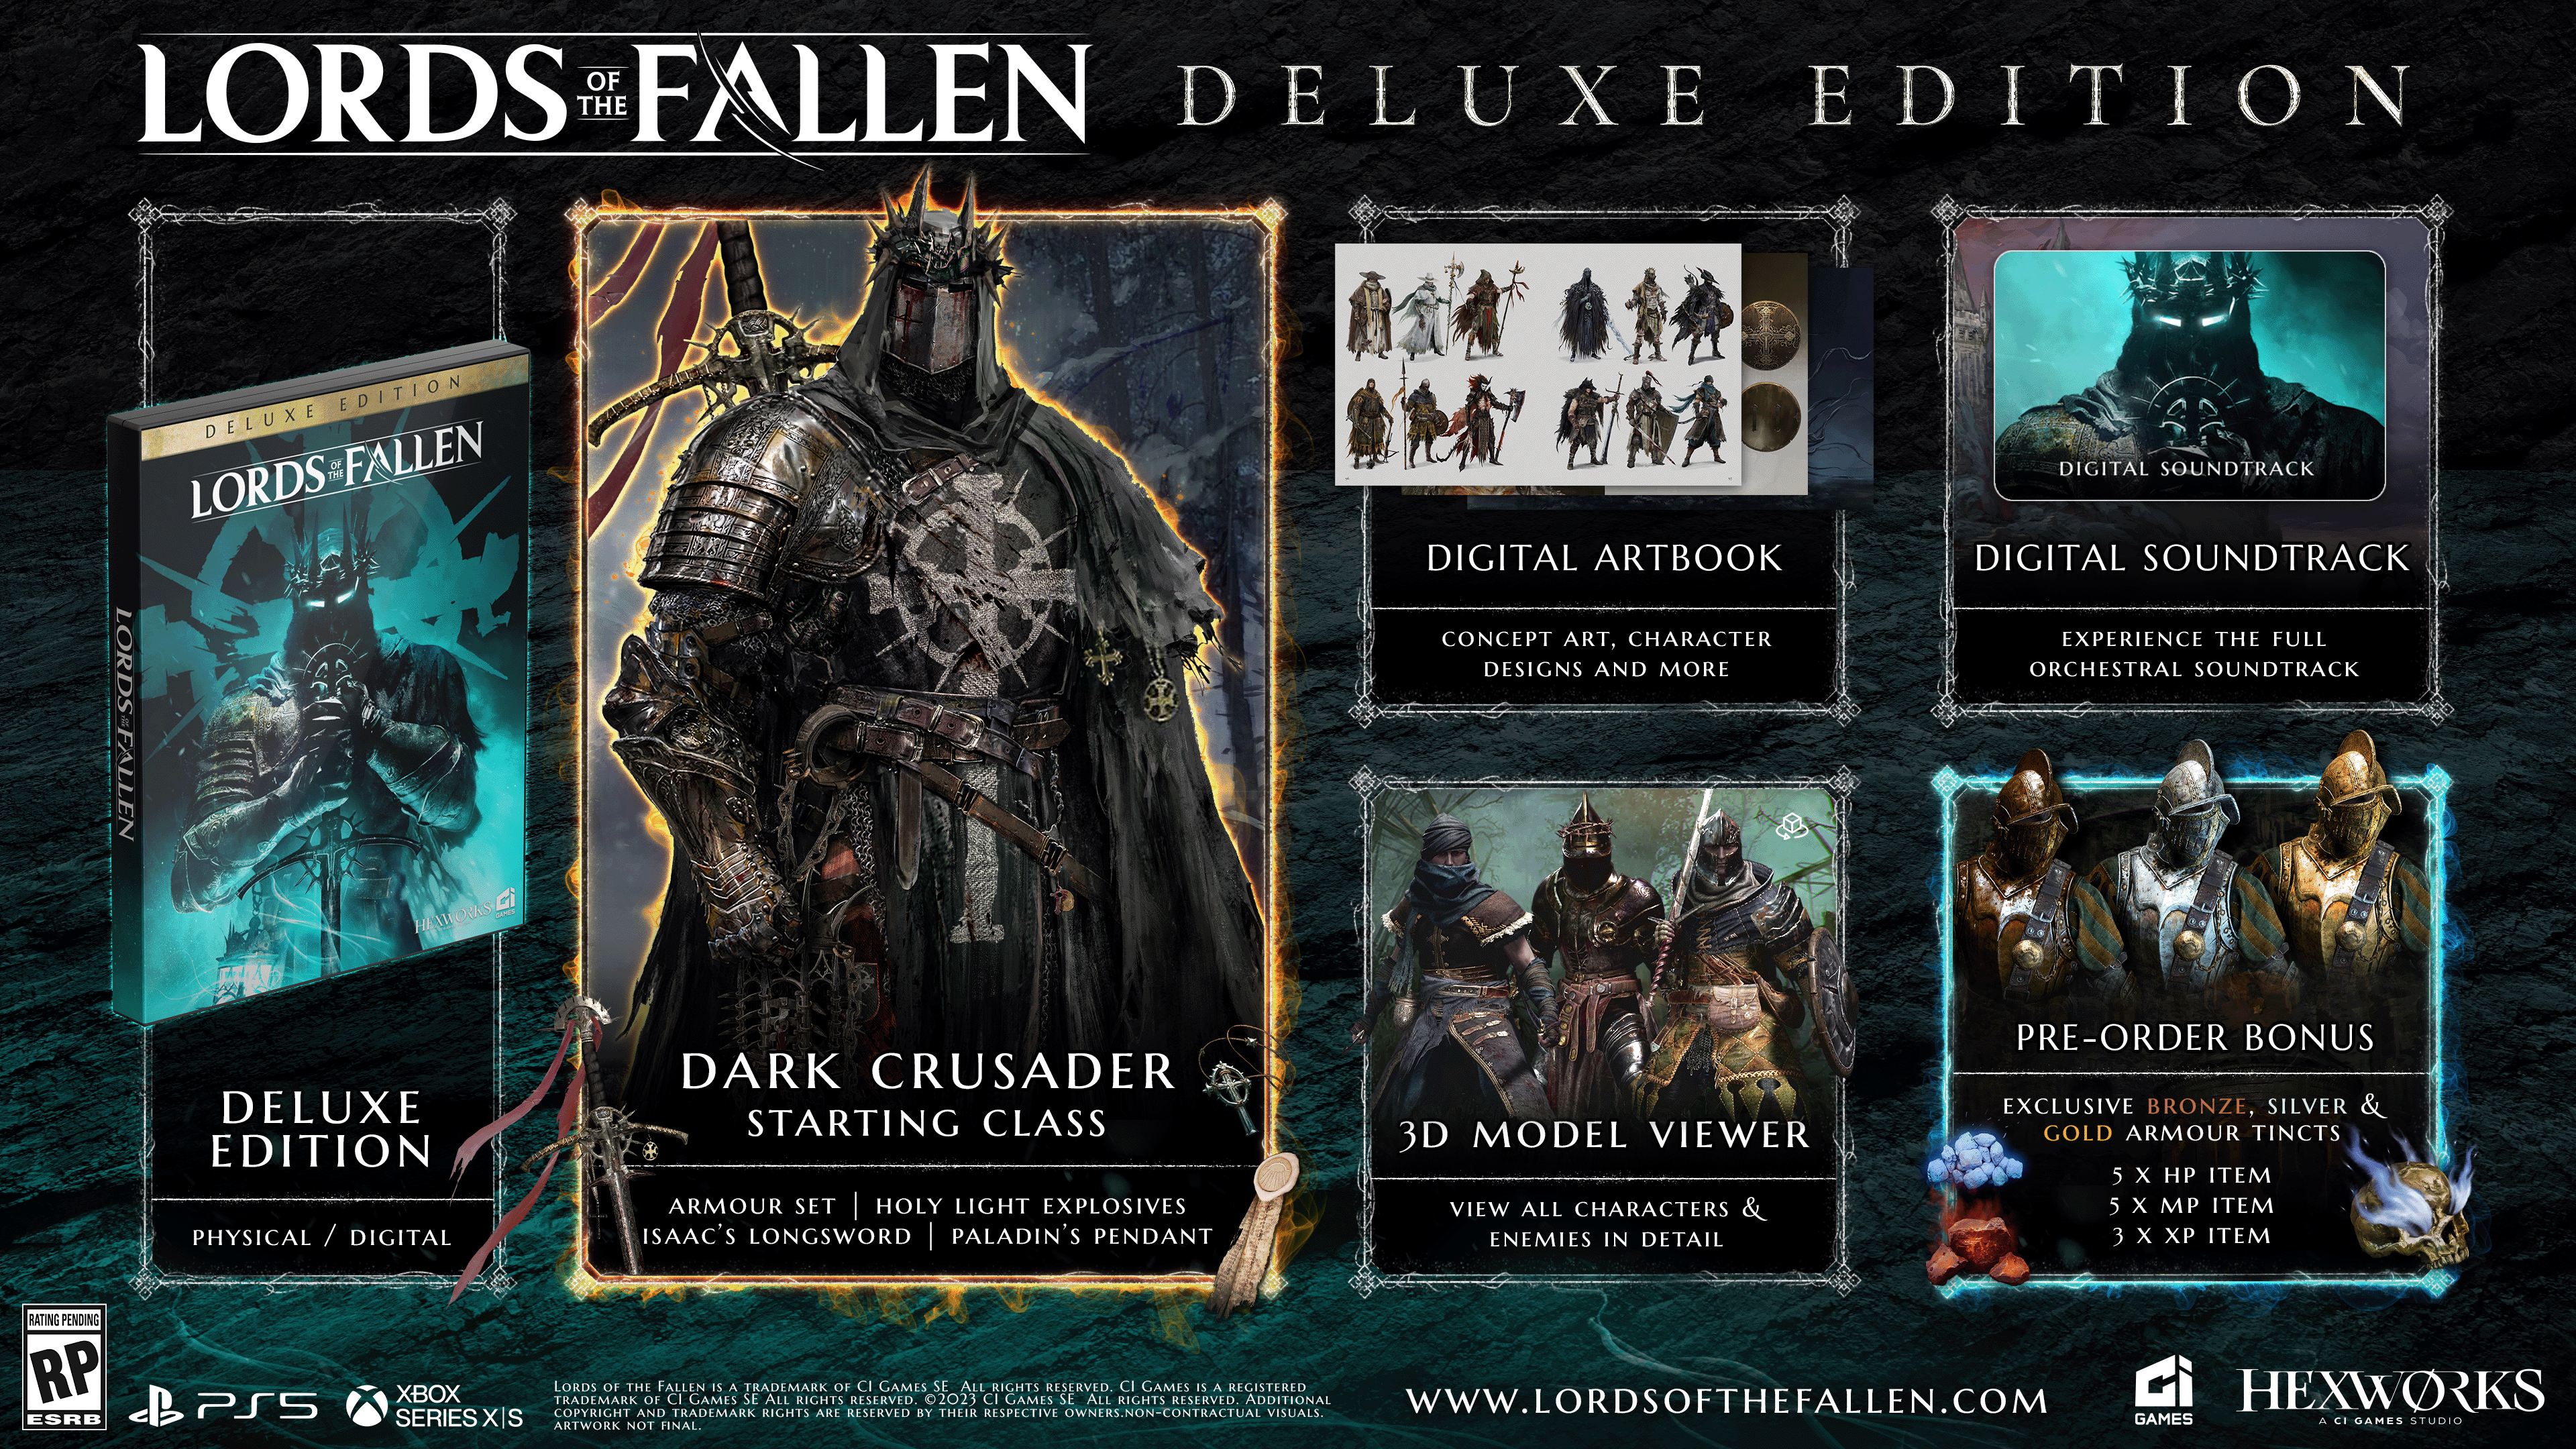 Lords of the Fallen - Digital PS5 - Edição Padrão - GameShopp